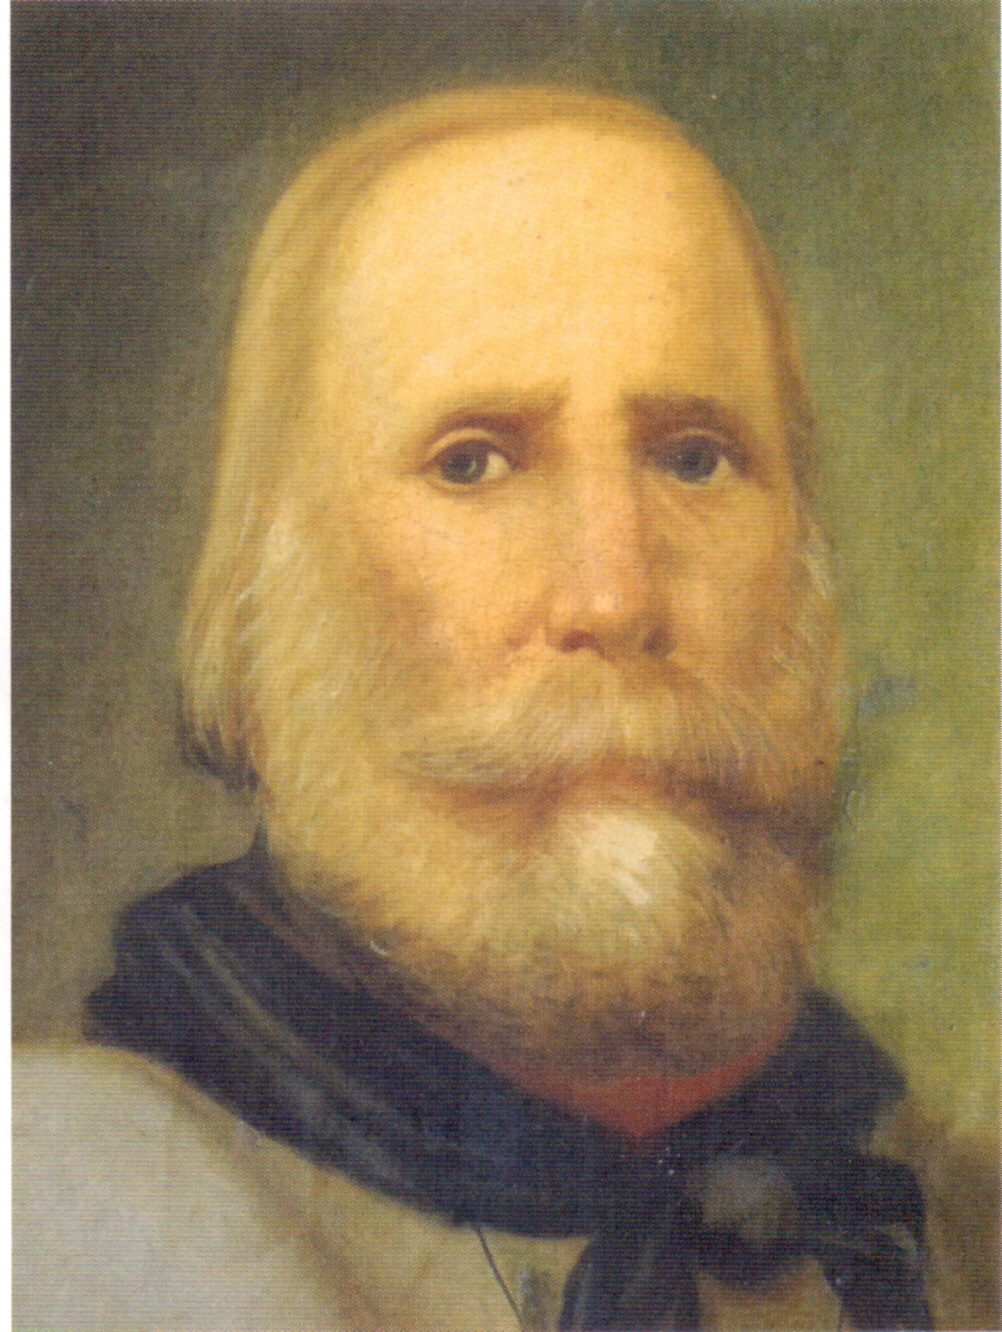 Garibaldi e Prato (1849). I luoghi e i protagonisti